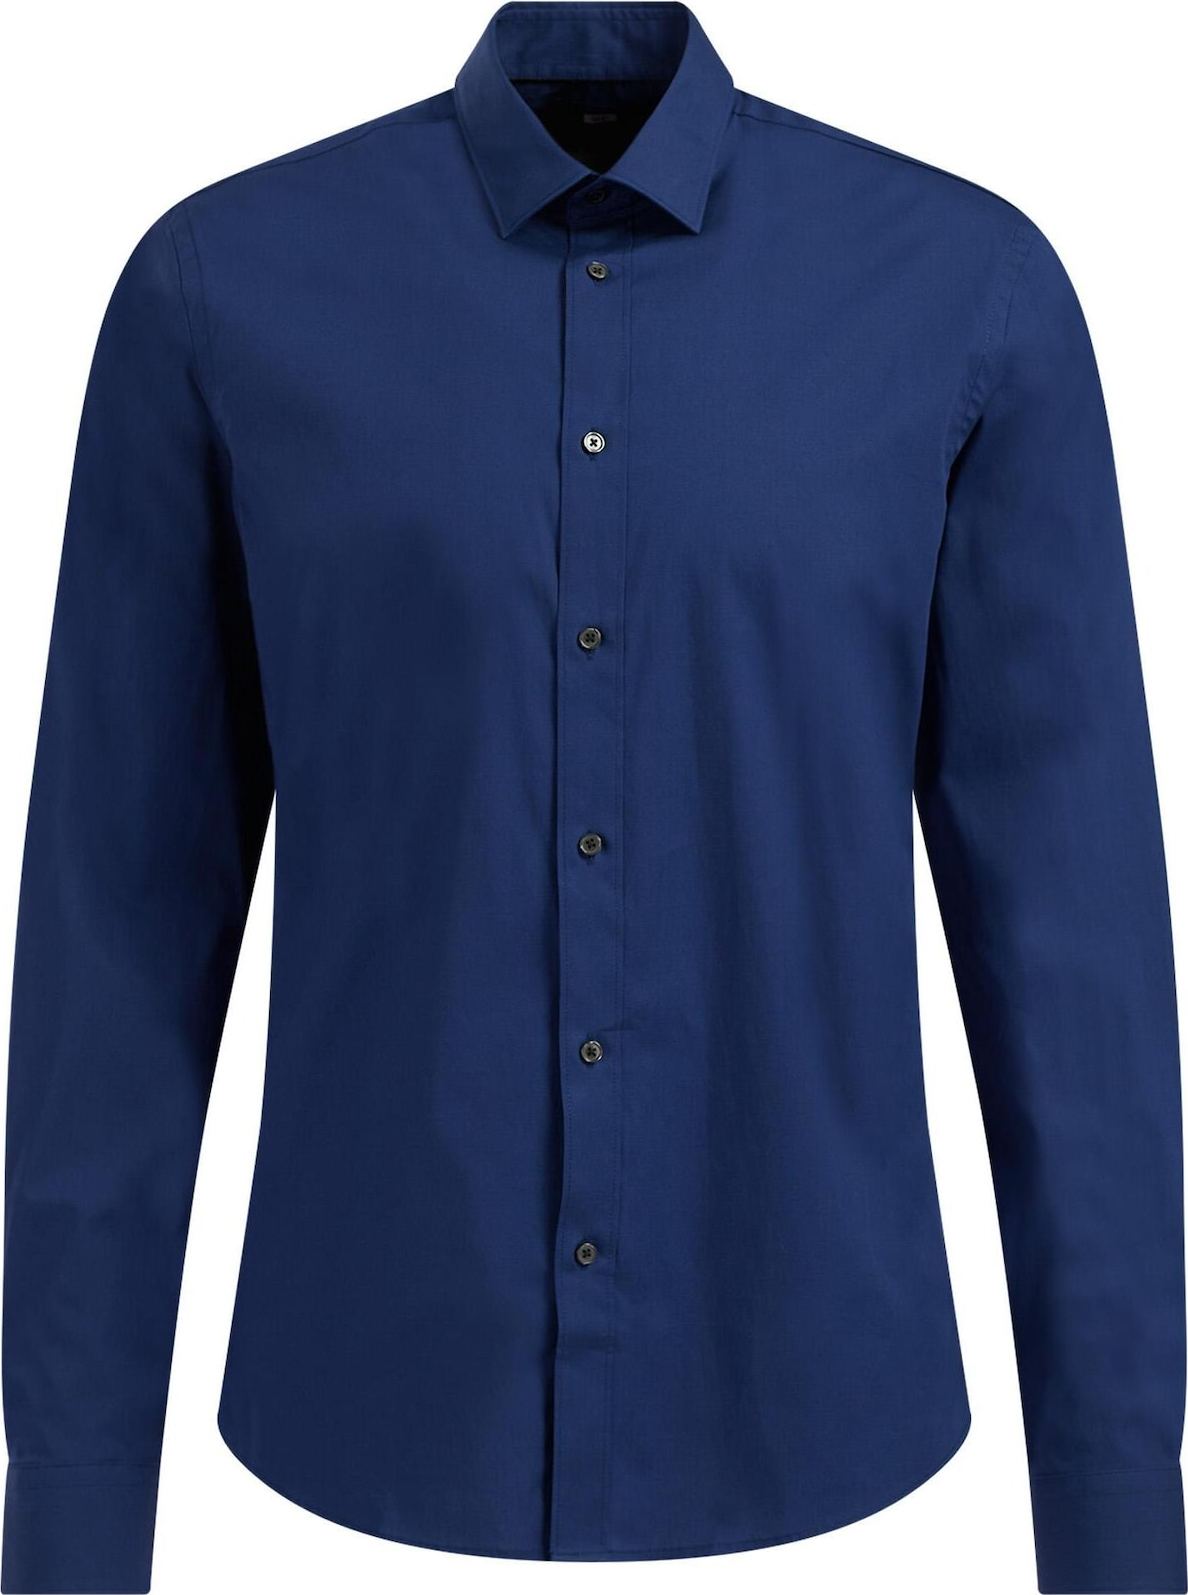 WE Fashion Košile ultramarínová modř